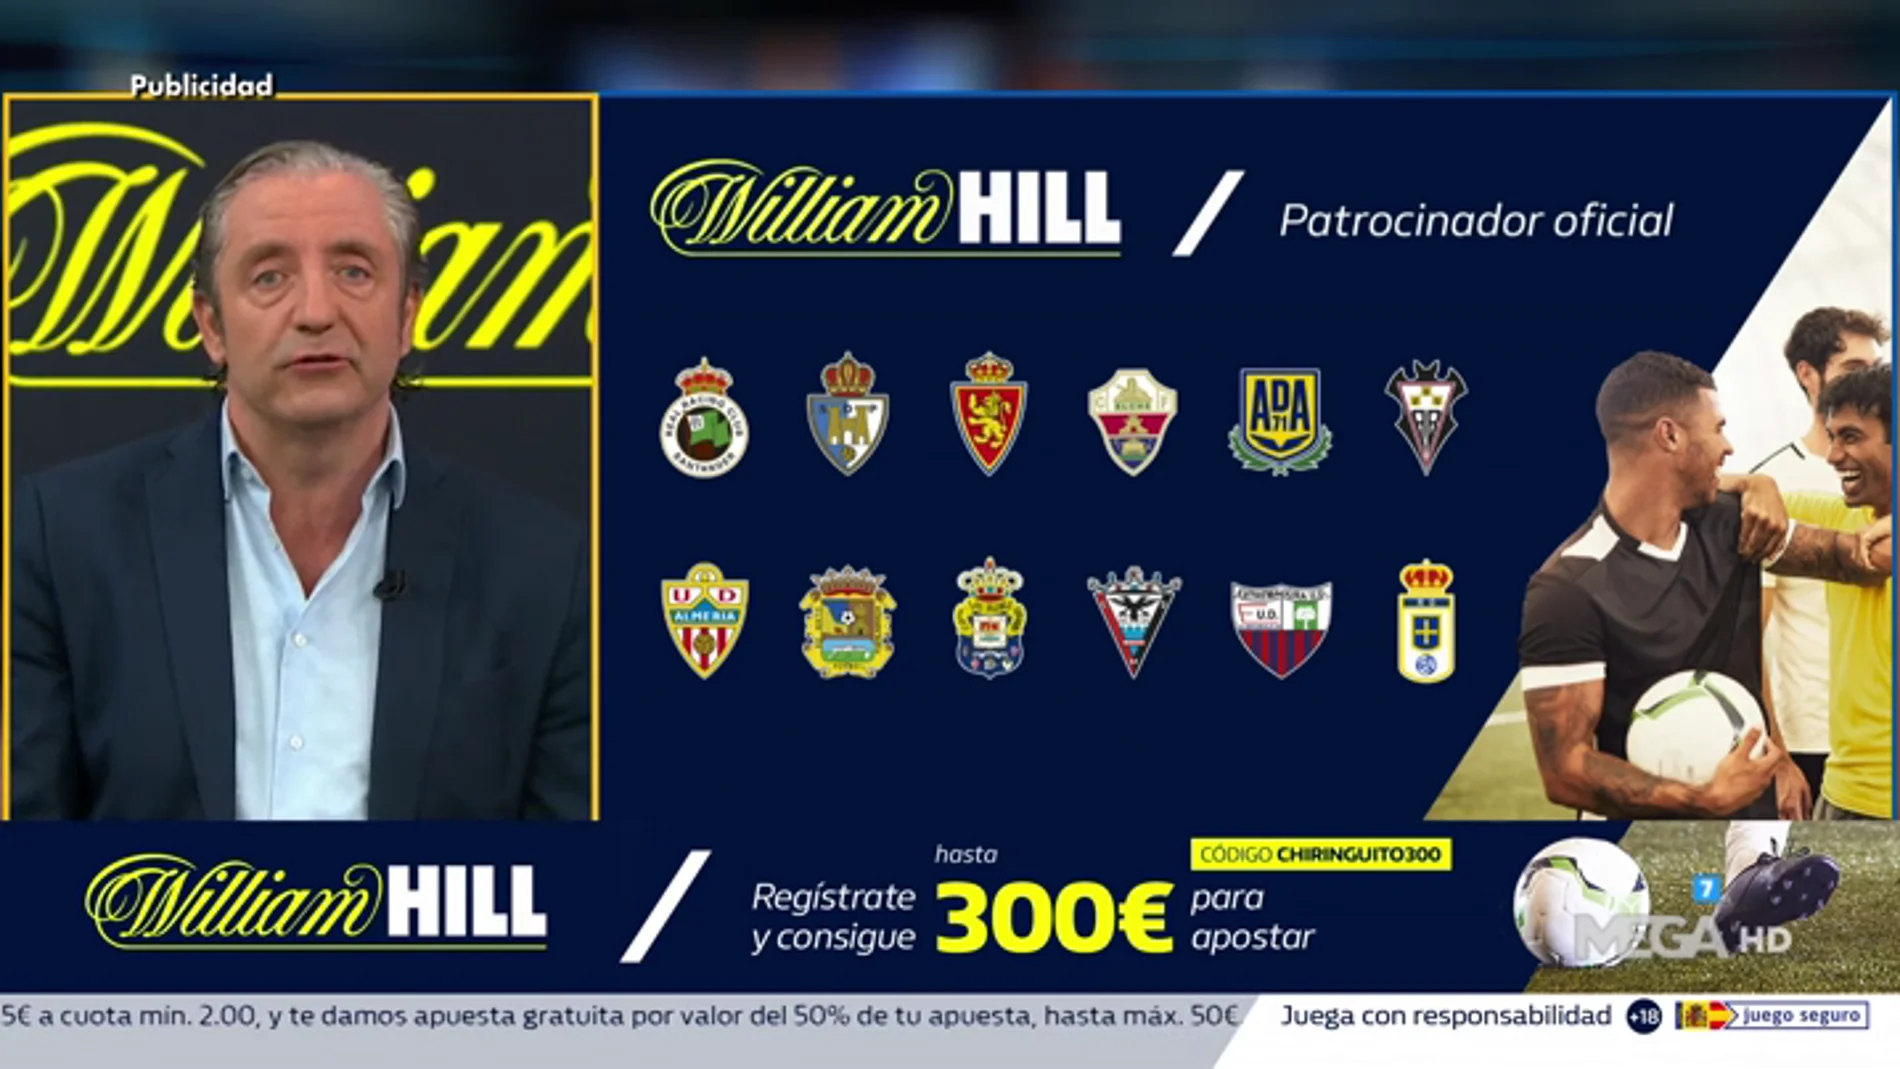 Josep te trae la mejor oferta de registro para que apuestes con William Hill 